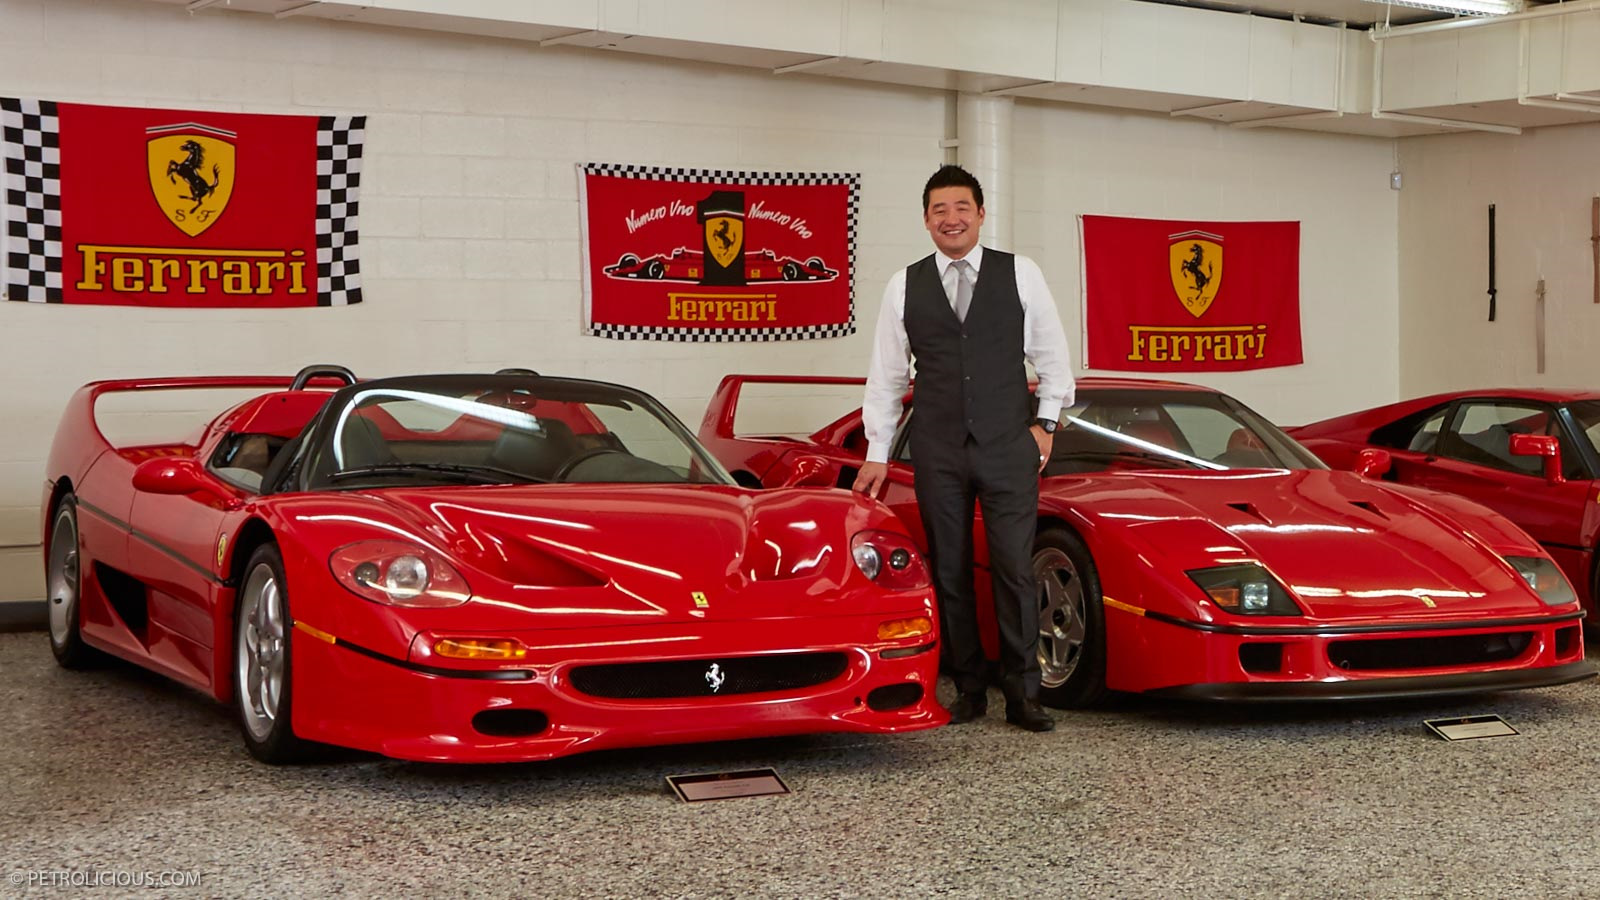 Ferrari collection. David Lee Ferrari Collector. Коллекционерские Феррари. Коллекция спортивных автомобилей. Амбассадор Феррари.